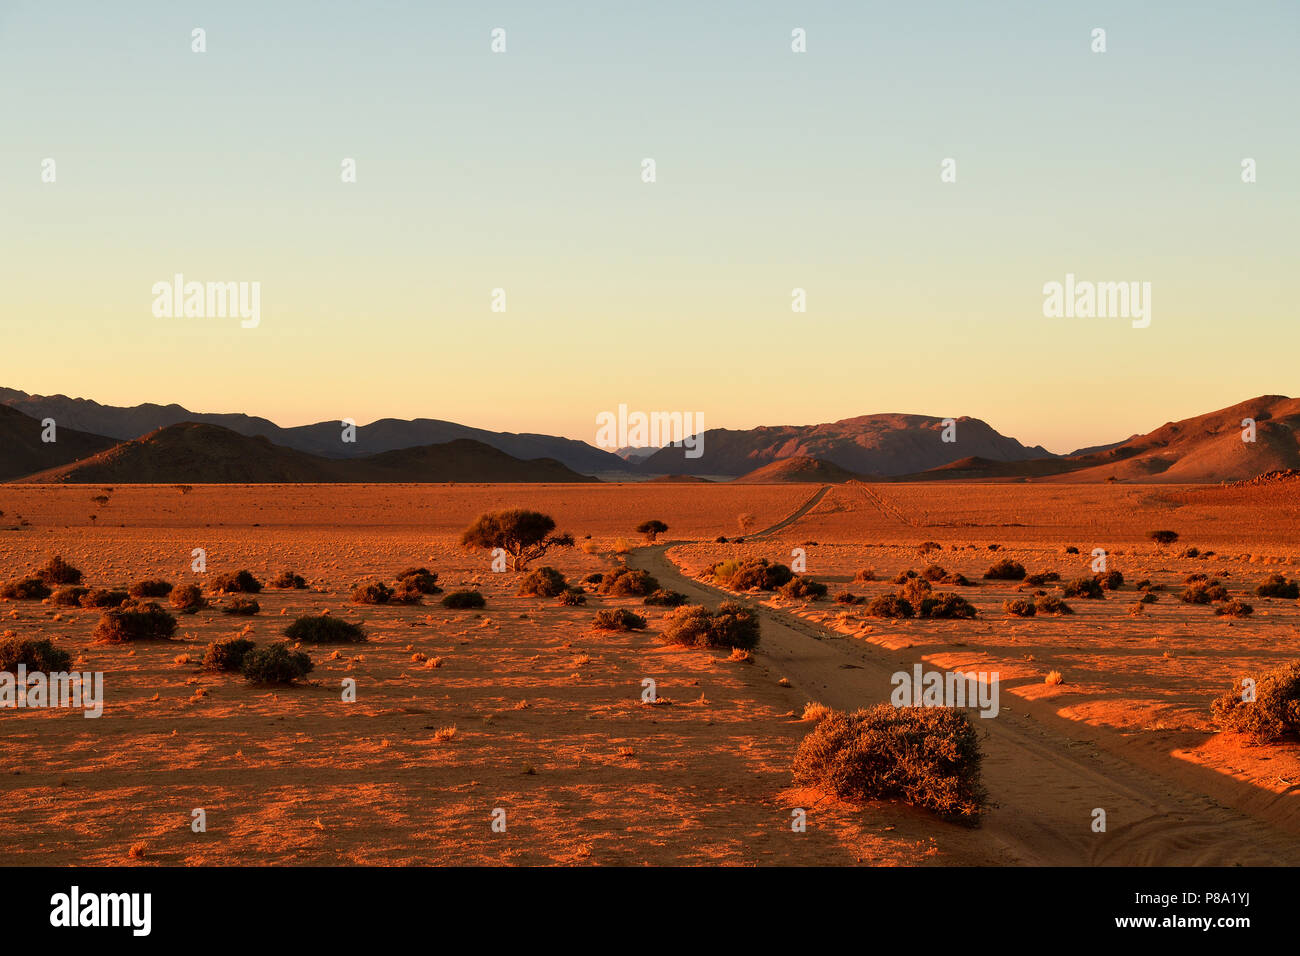 Pista de arena por el desierto de arena, Tiras montañas en el horizonte al ponerse el sol, Namibia Foto de stock